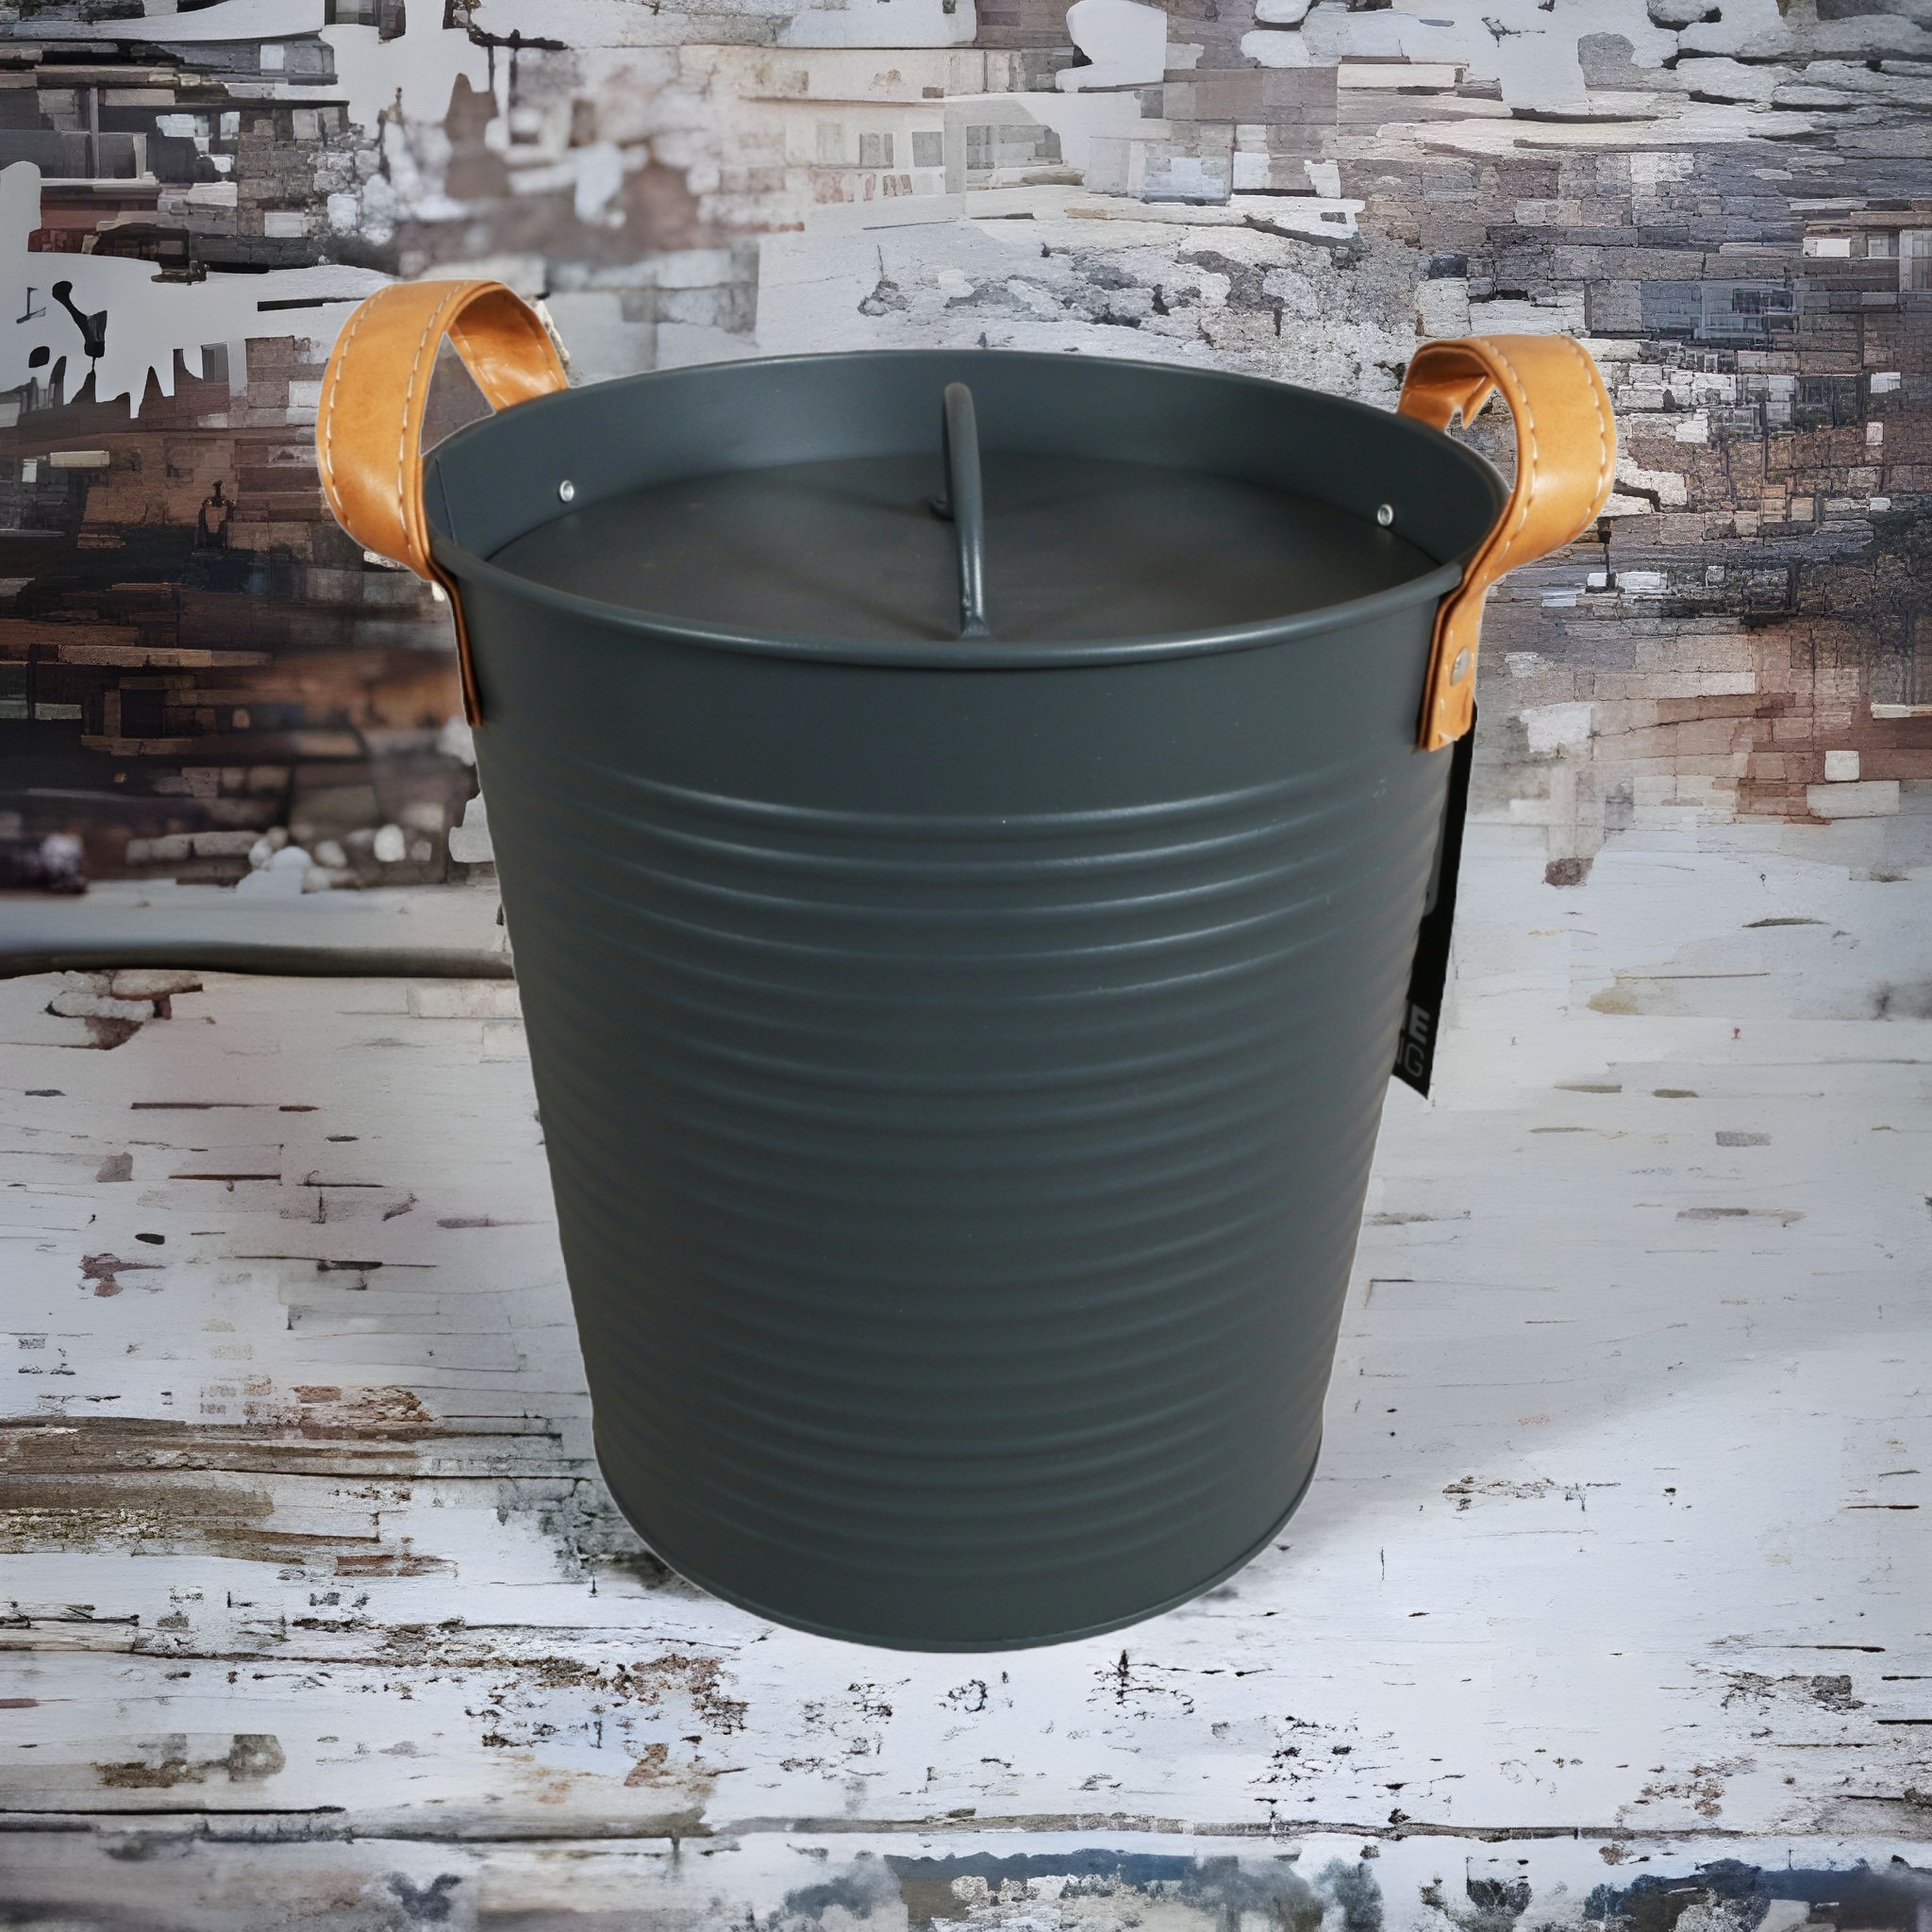 Ice Bucket Metal Charcoal With Lid 22108